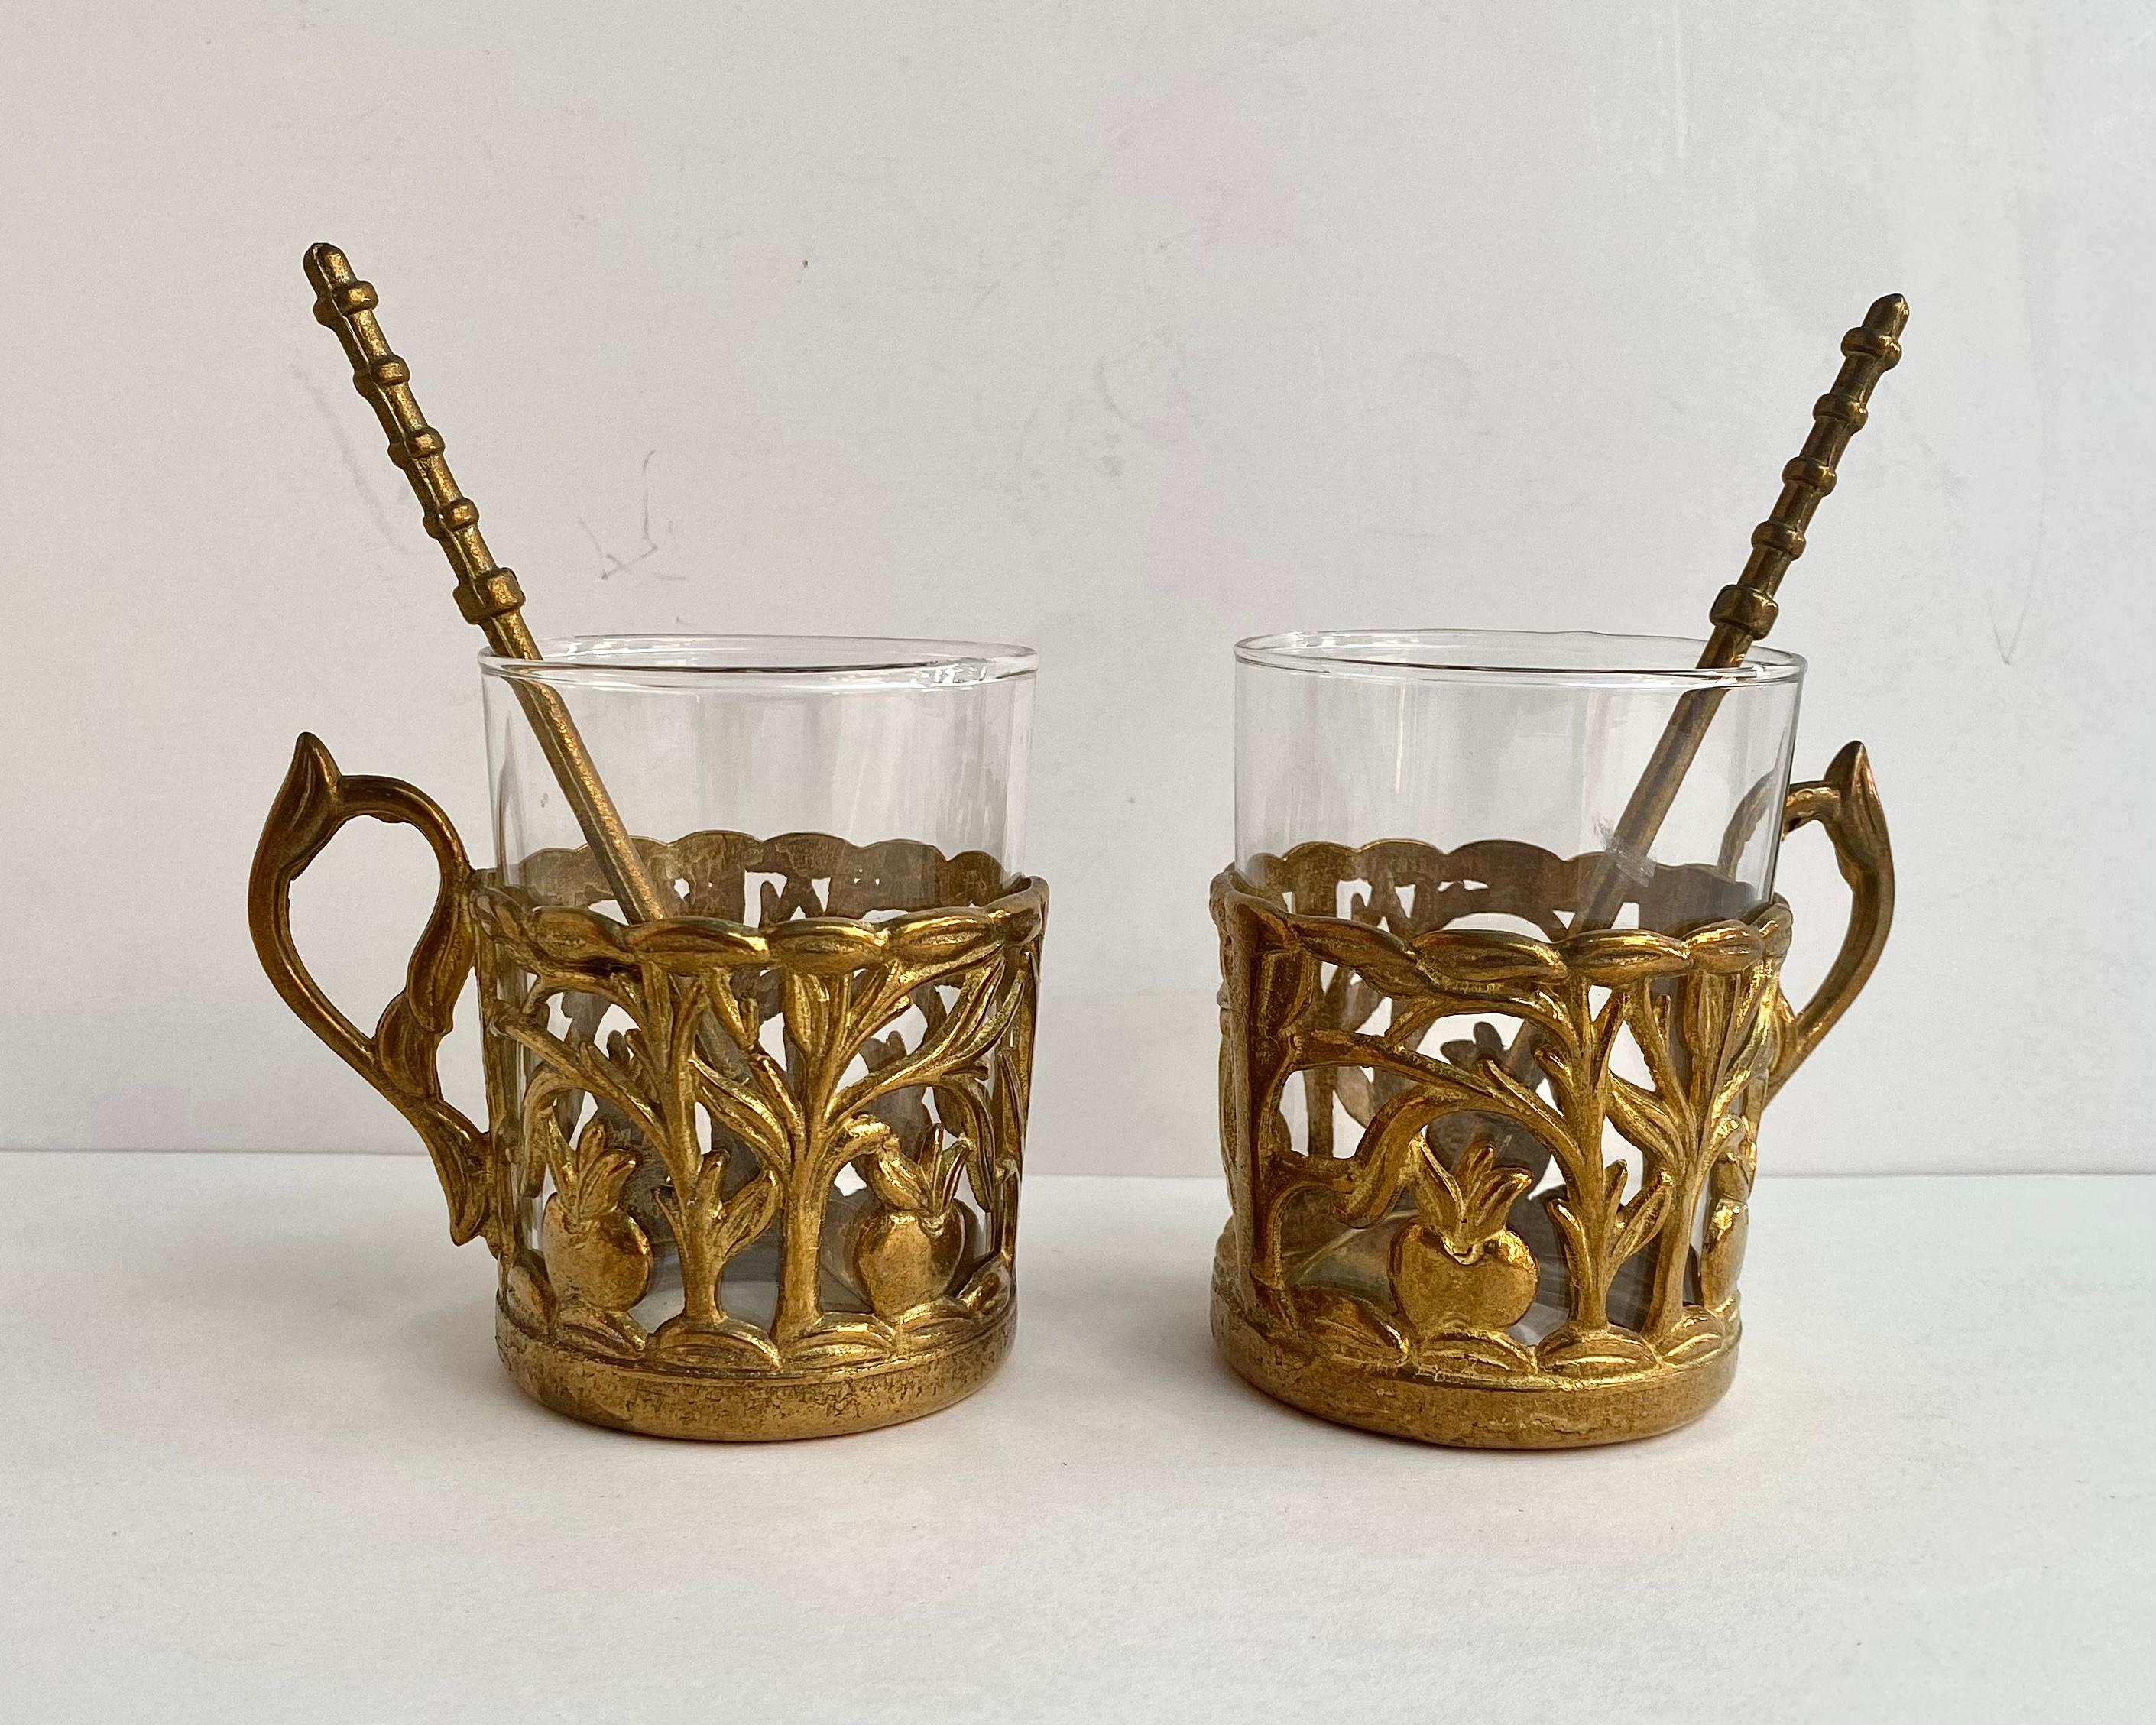 Das originelle antike Teeservice besteht aus 2 Teetassen aus Glas, Glashaltern aus Messing und Löffeln.

Hergestellt in Frankreich.

Erfreuen Sie sich oder Ihre Lieben mit schönem und edlem Geschirr.

Handgefertigt. Messing, Glas. Gravieren,